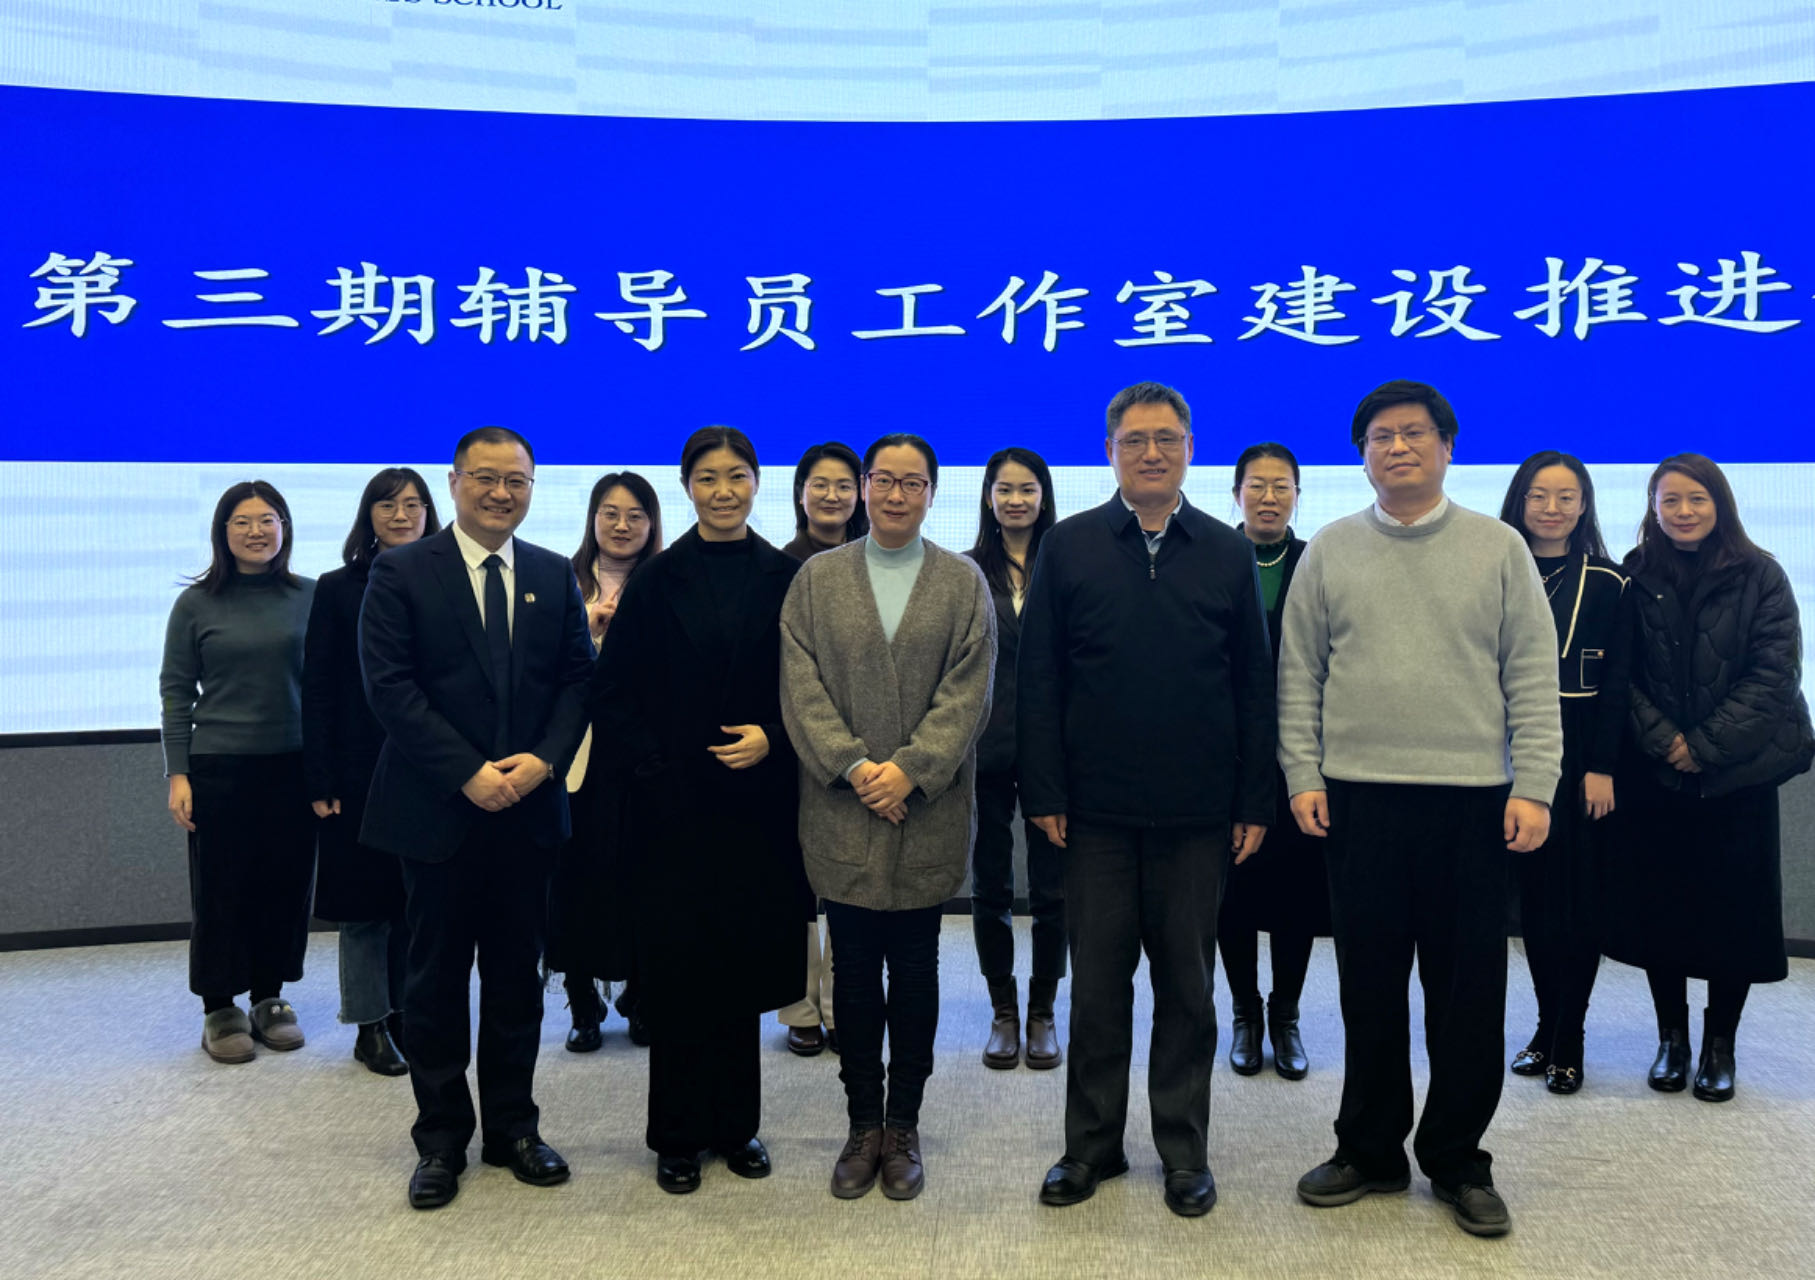 上海商学院召开上海商学院第三期辅导员工作室建设推进会